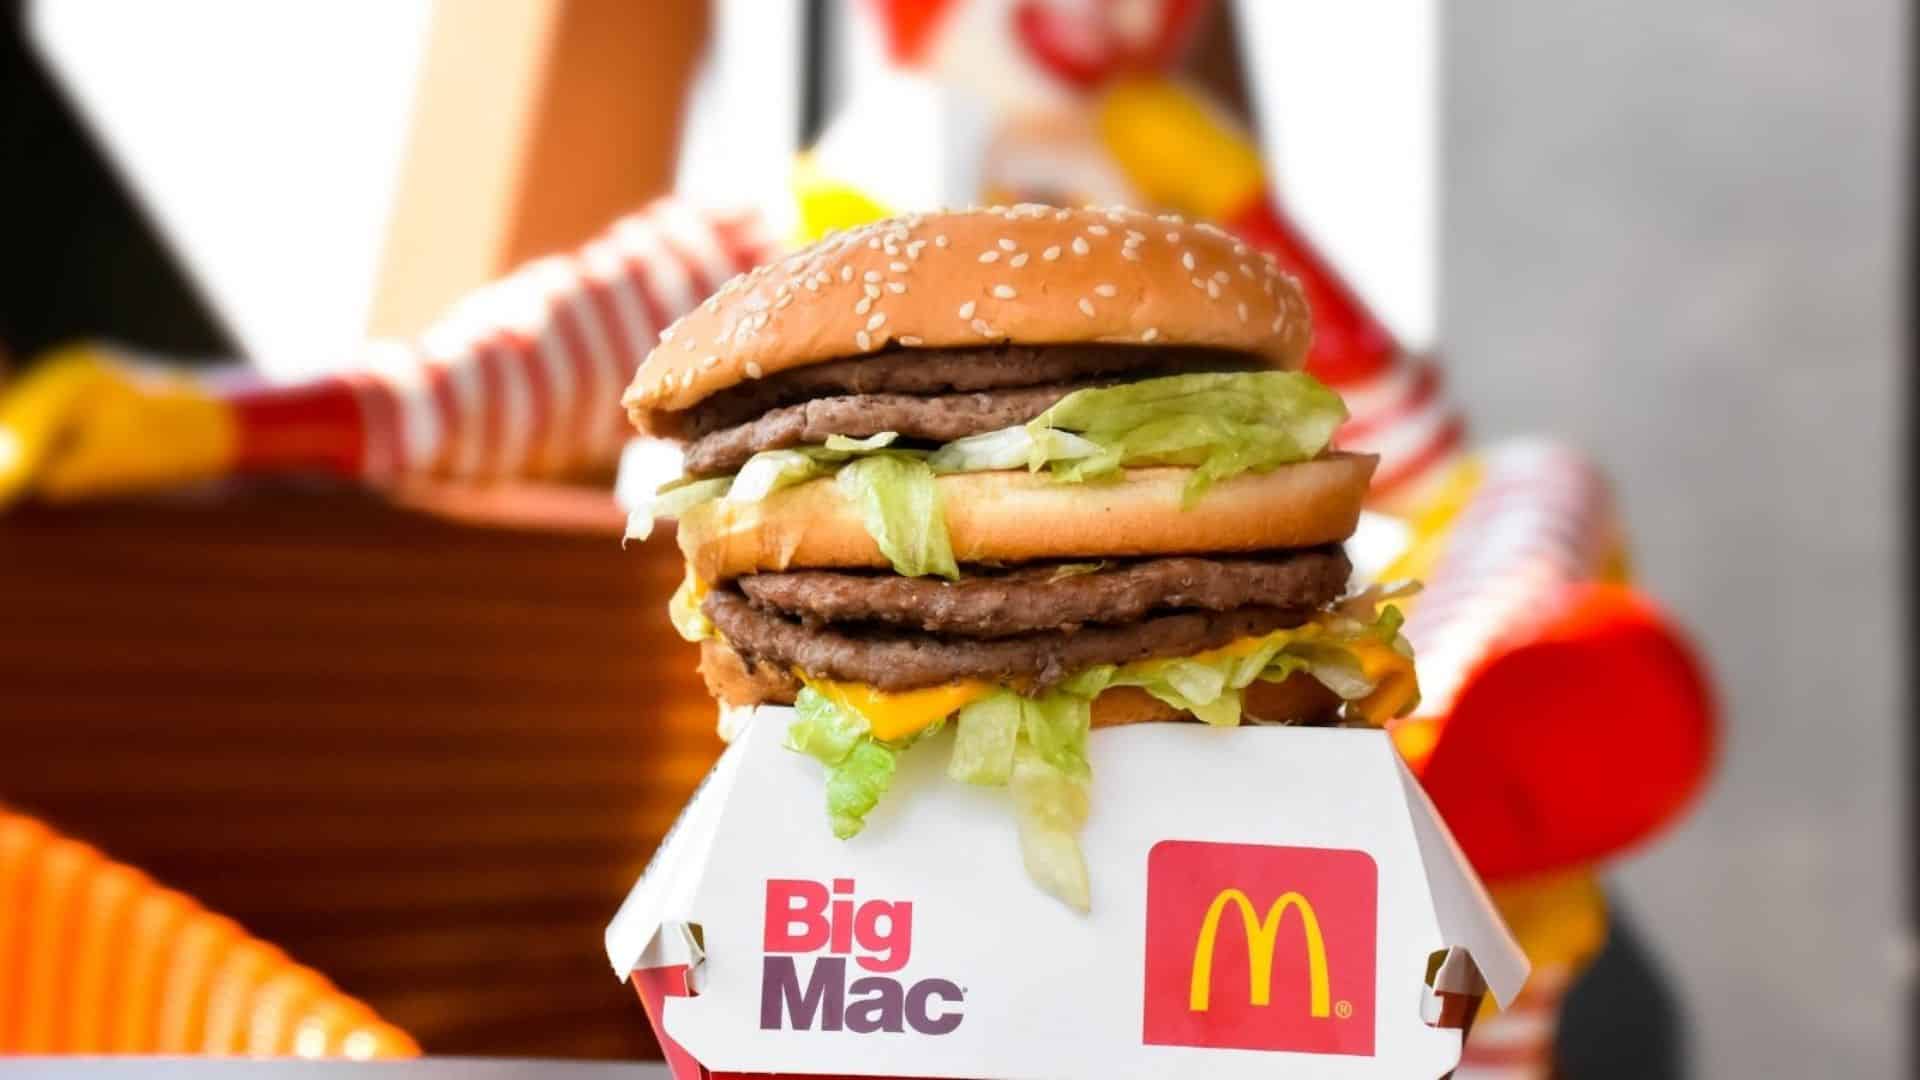 McDonald’s : un ancien employé partage la recette secrète de la sauce Big Mac